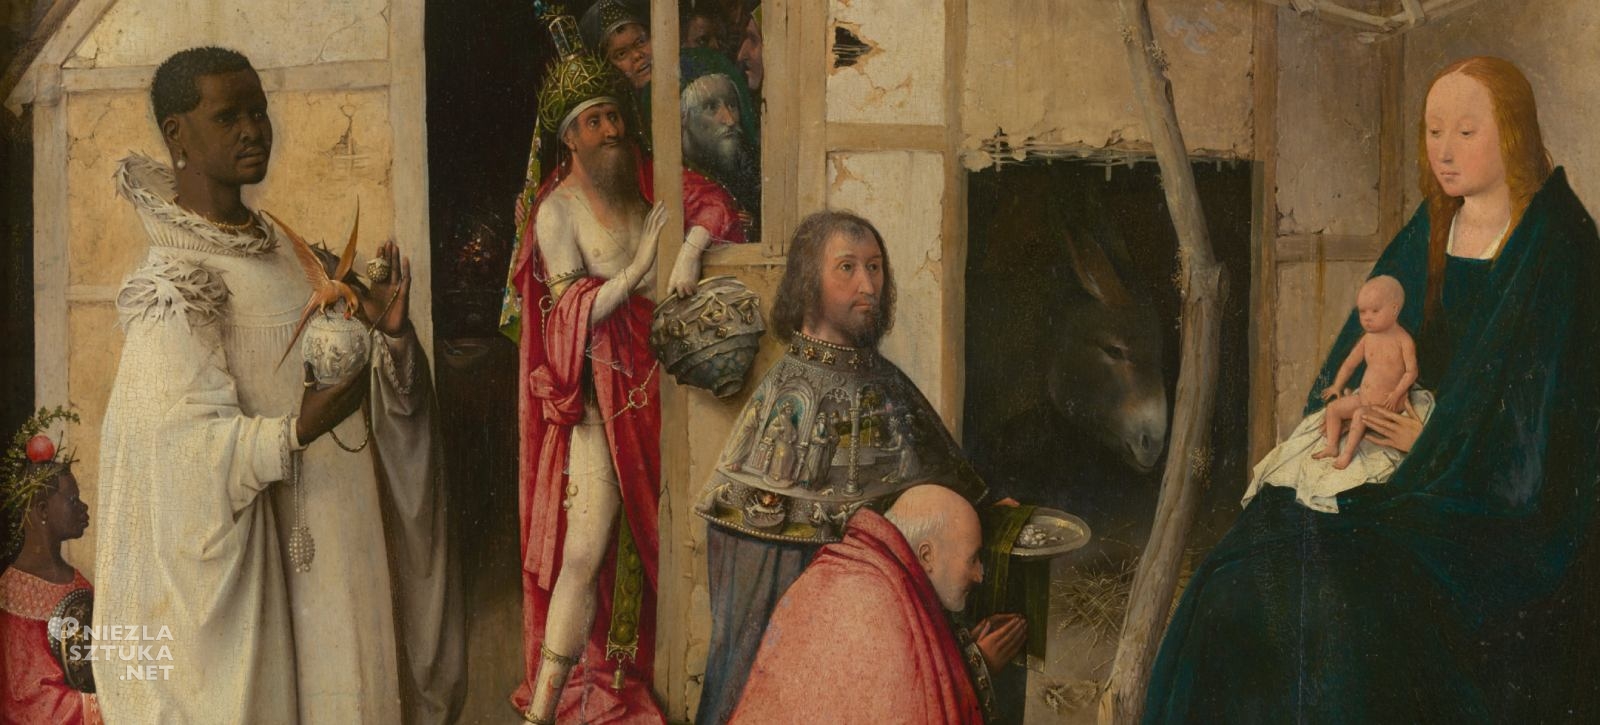 Hieronim Bosch, Pokłon Trzech Króli, Ołtarz Epifanii, Adoracja Dzieciątka, Boże Narodzenie w sztuce, Prado, Madryt, niezła sztuka